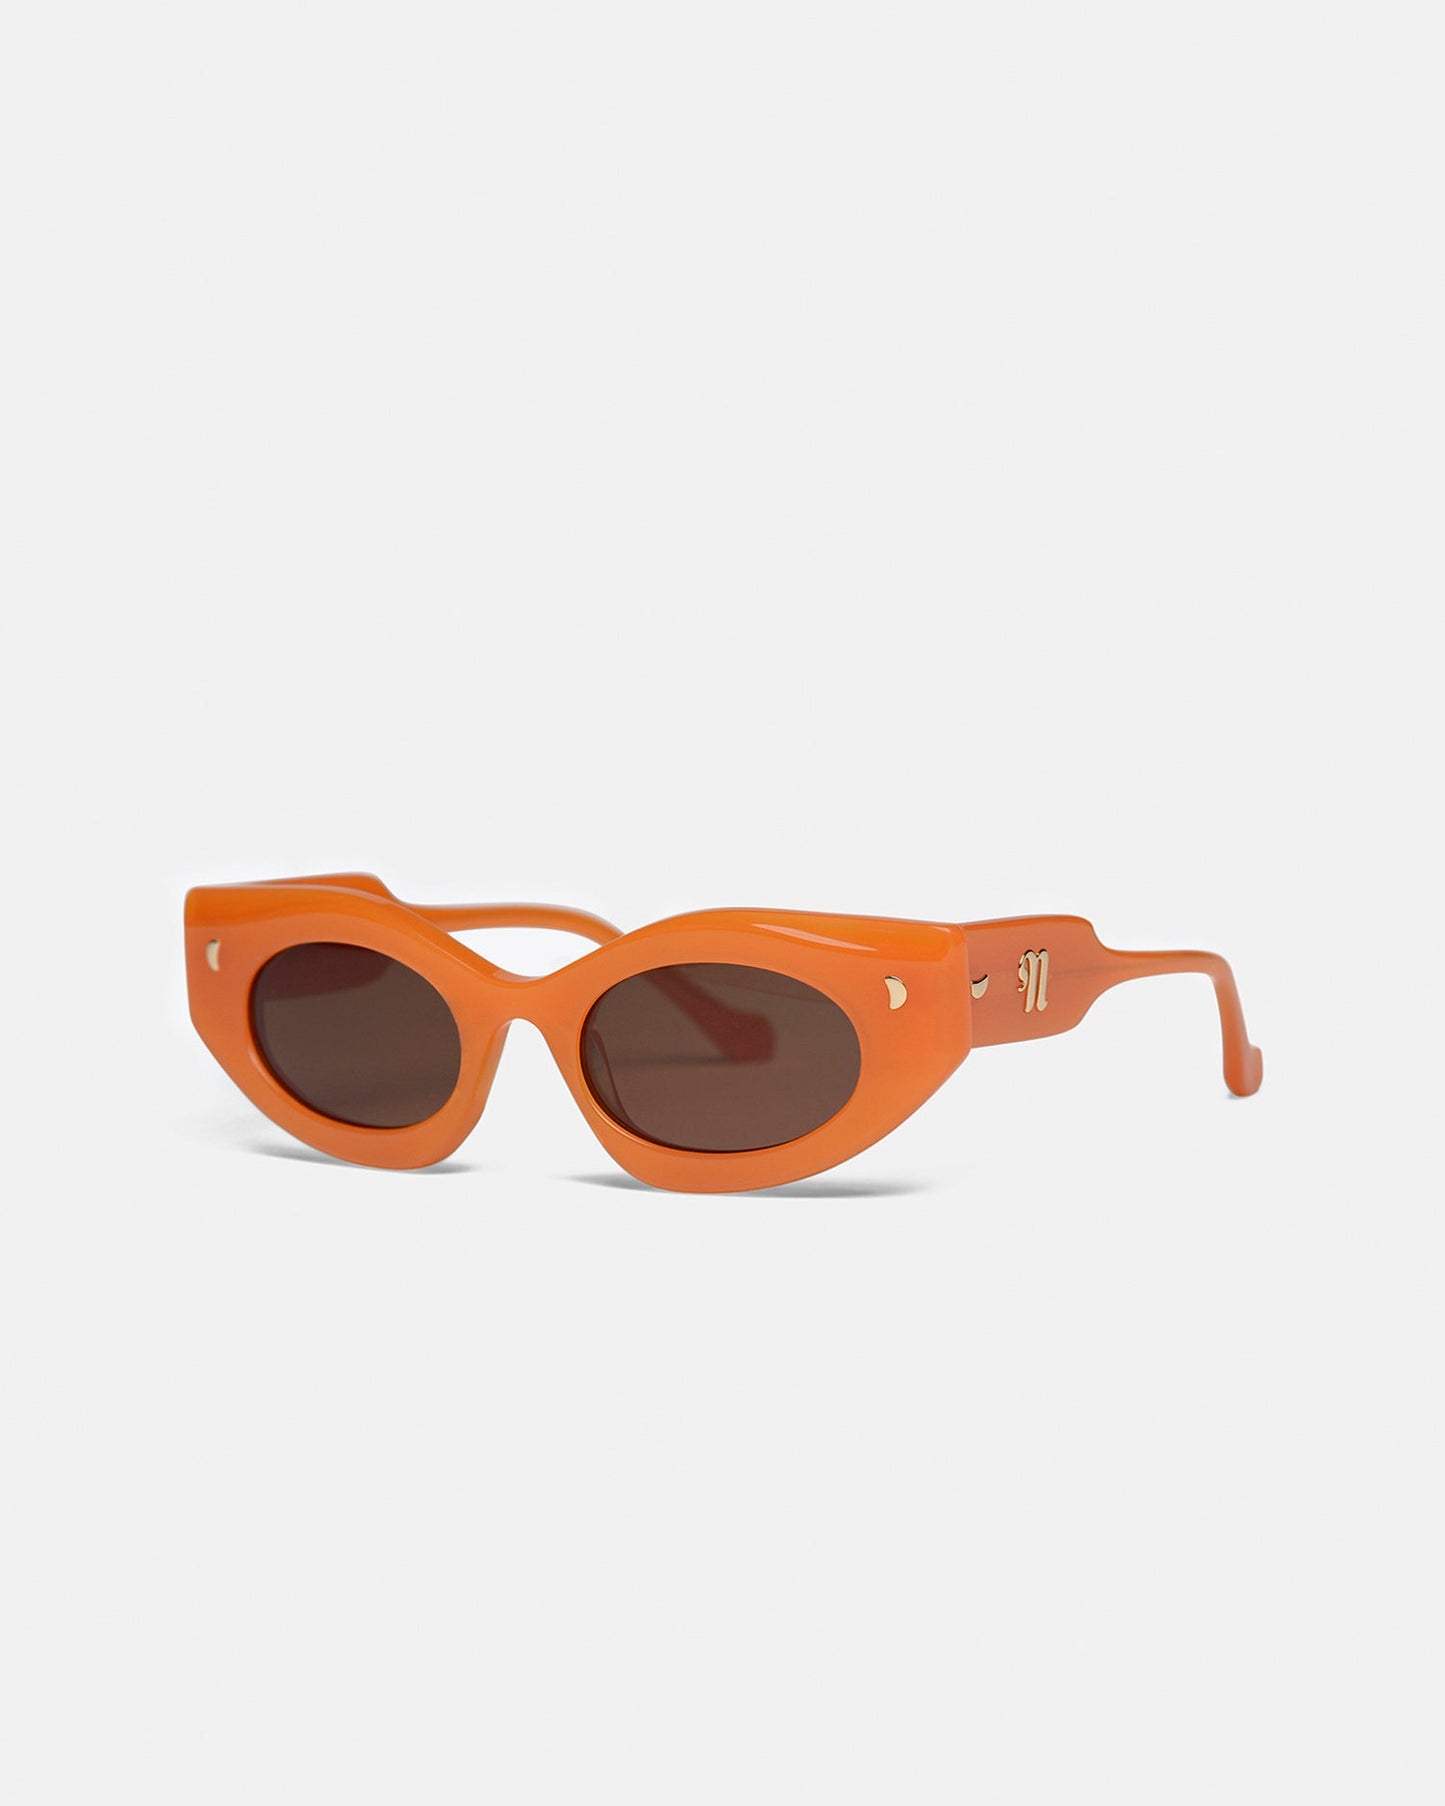 Leonie - Bio-Plastic Sunglasses - Orange Merino